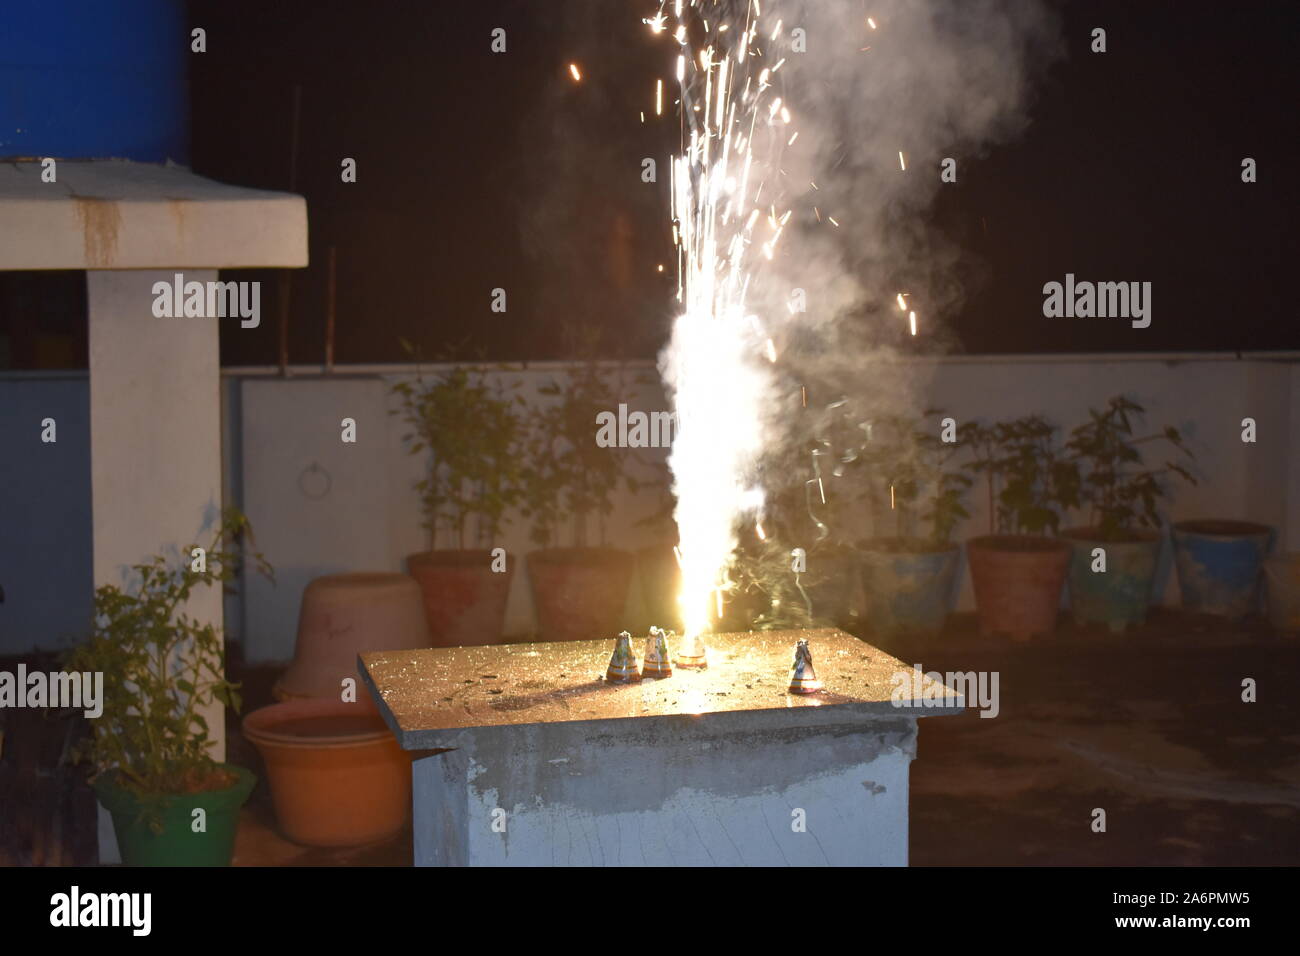 Bac à fleur d'artifice Diwali Diwali festival feu d'étincelles d'arbres est célébré en Inde plus populaire fête hindoue célébrée avec le feu fonctionne. Banque D'Images